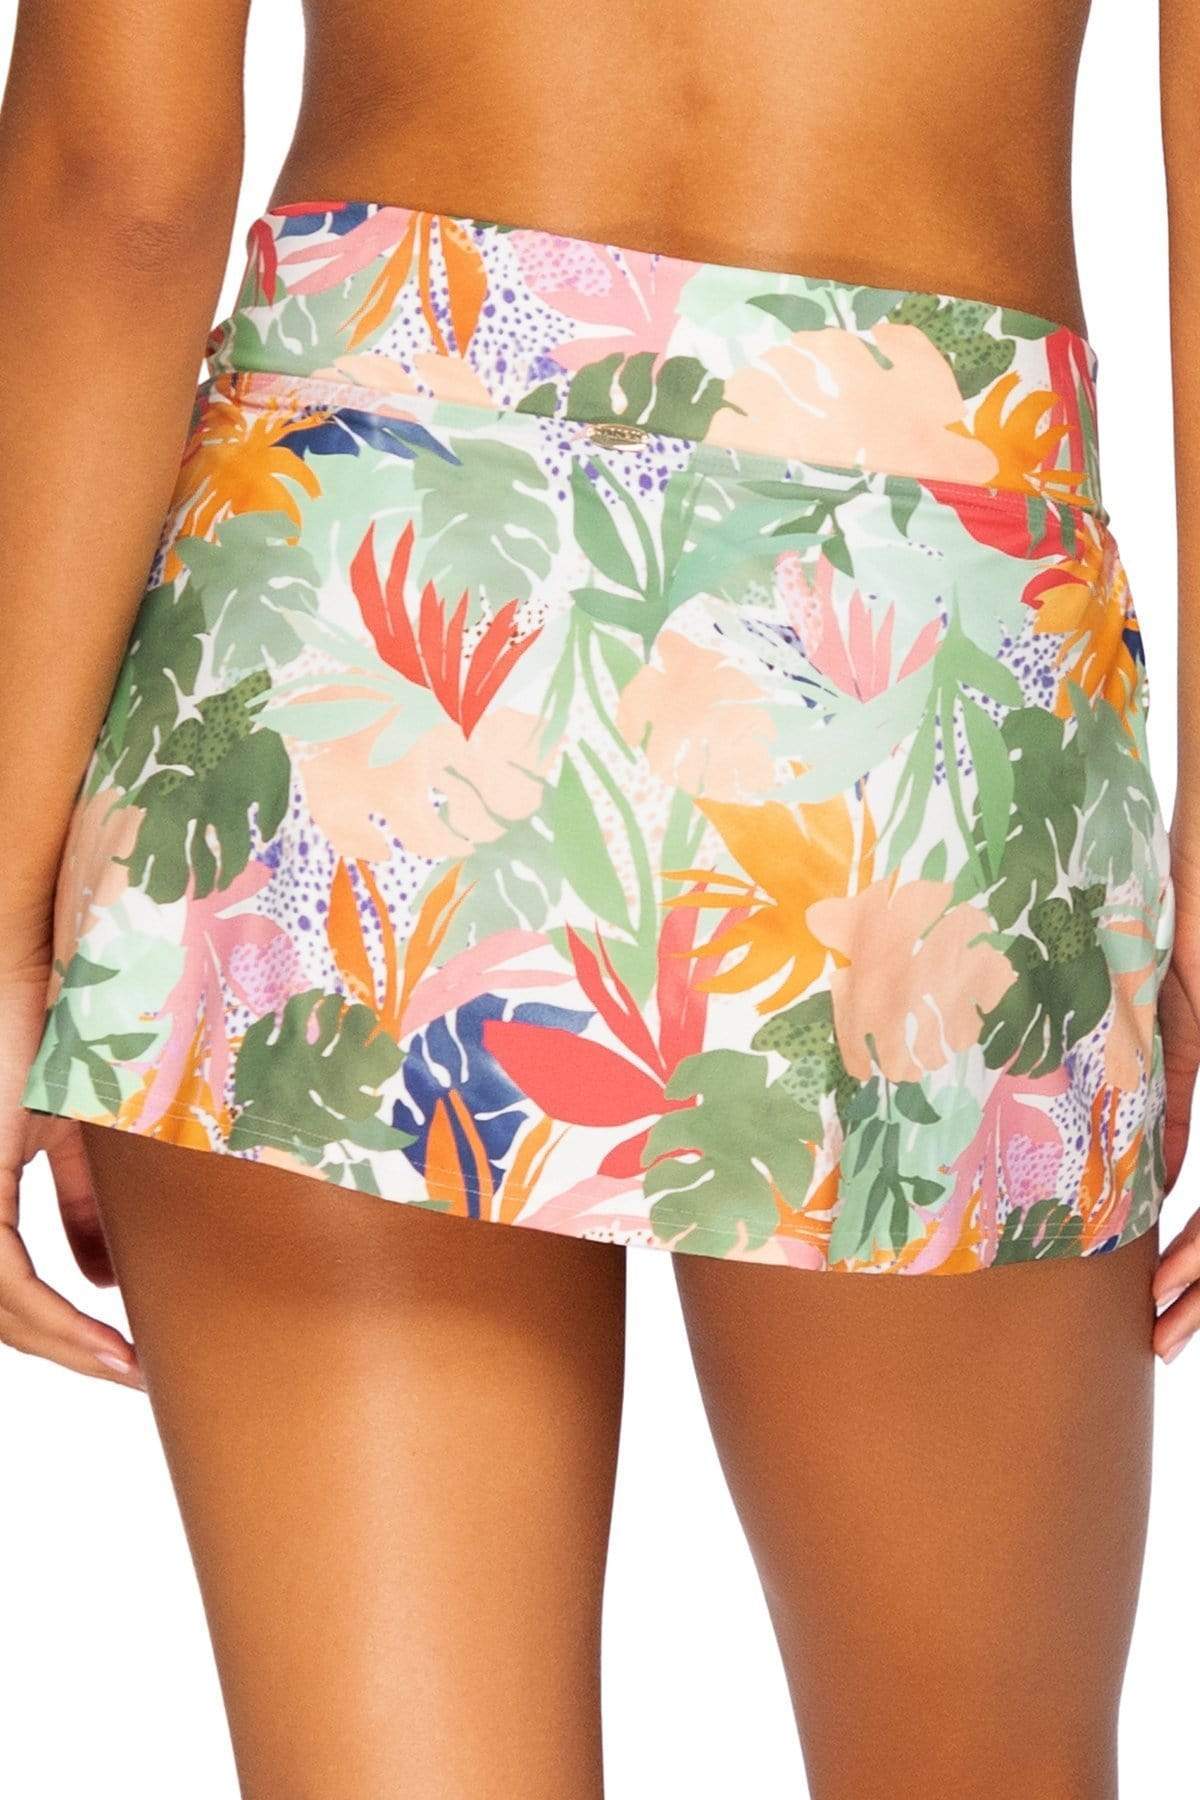 Bestswimwear -  Sunsets Serendipity Summer Lovin Swim Skirt